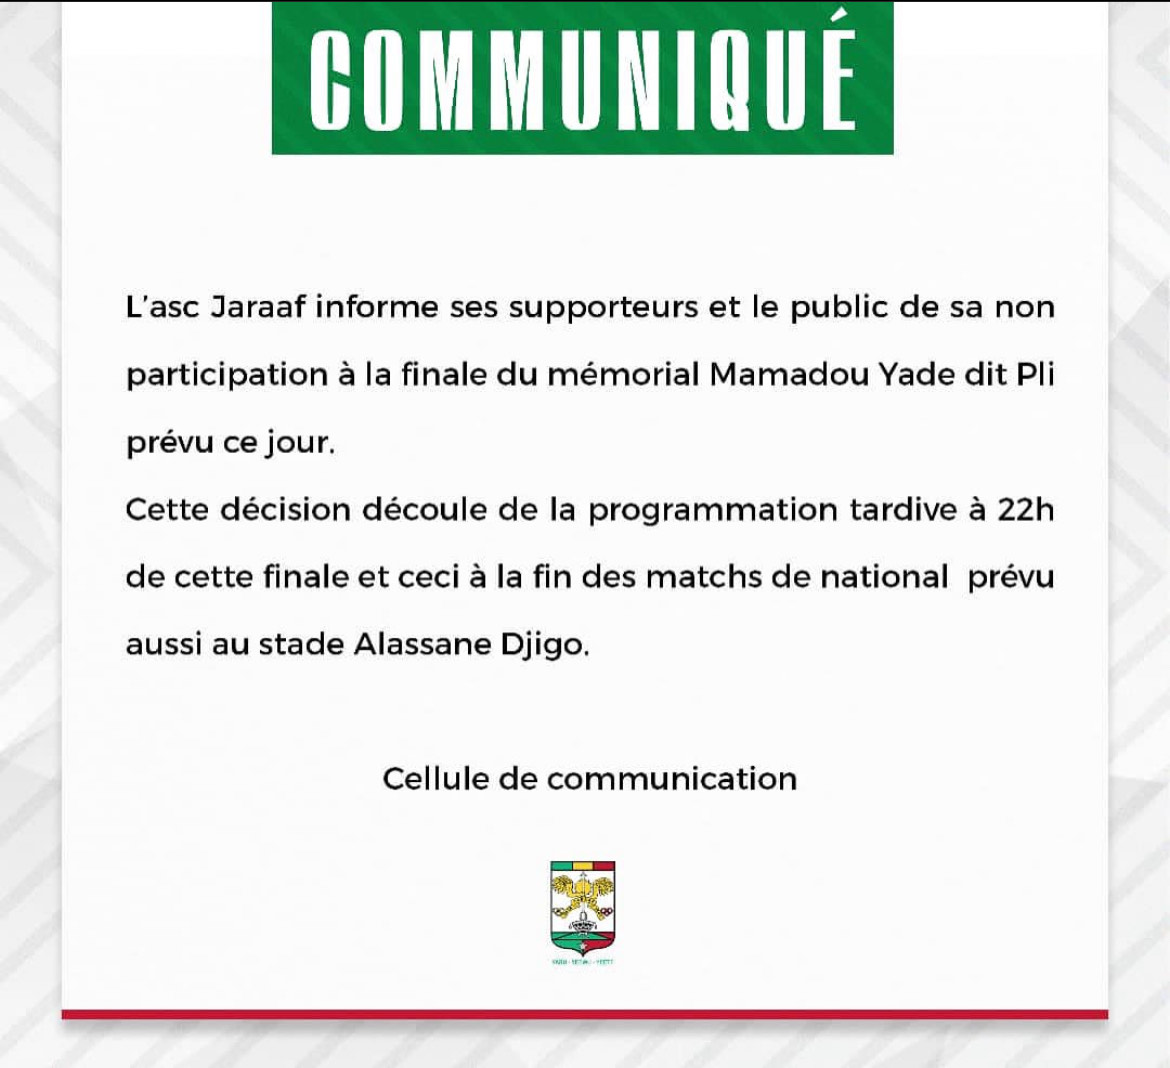 Finale du mémorial « Pape Yade » : Le Jaraaf annonce son désistement au denier moment !